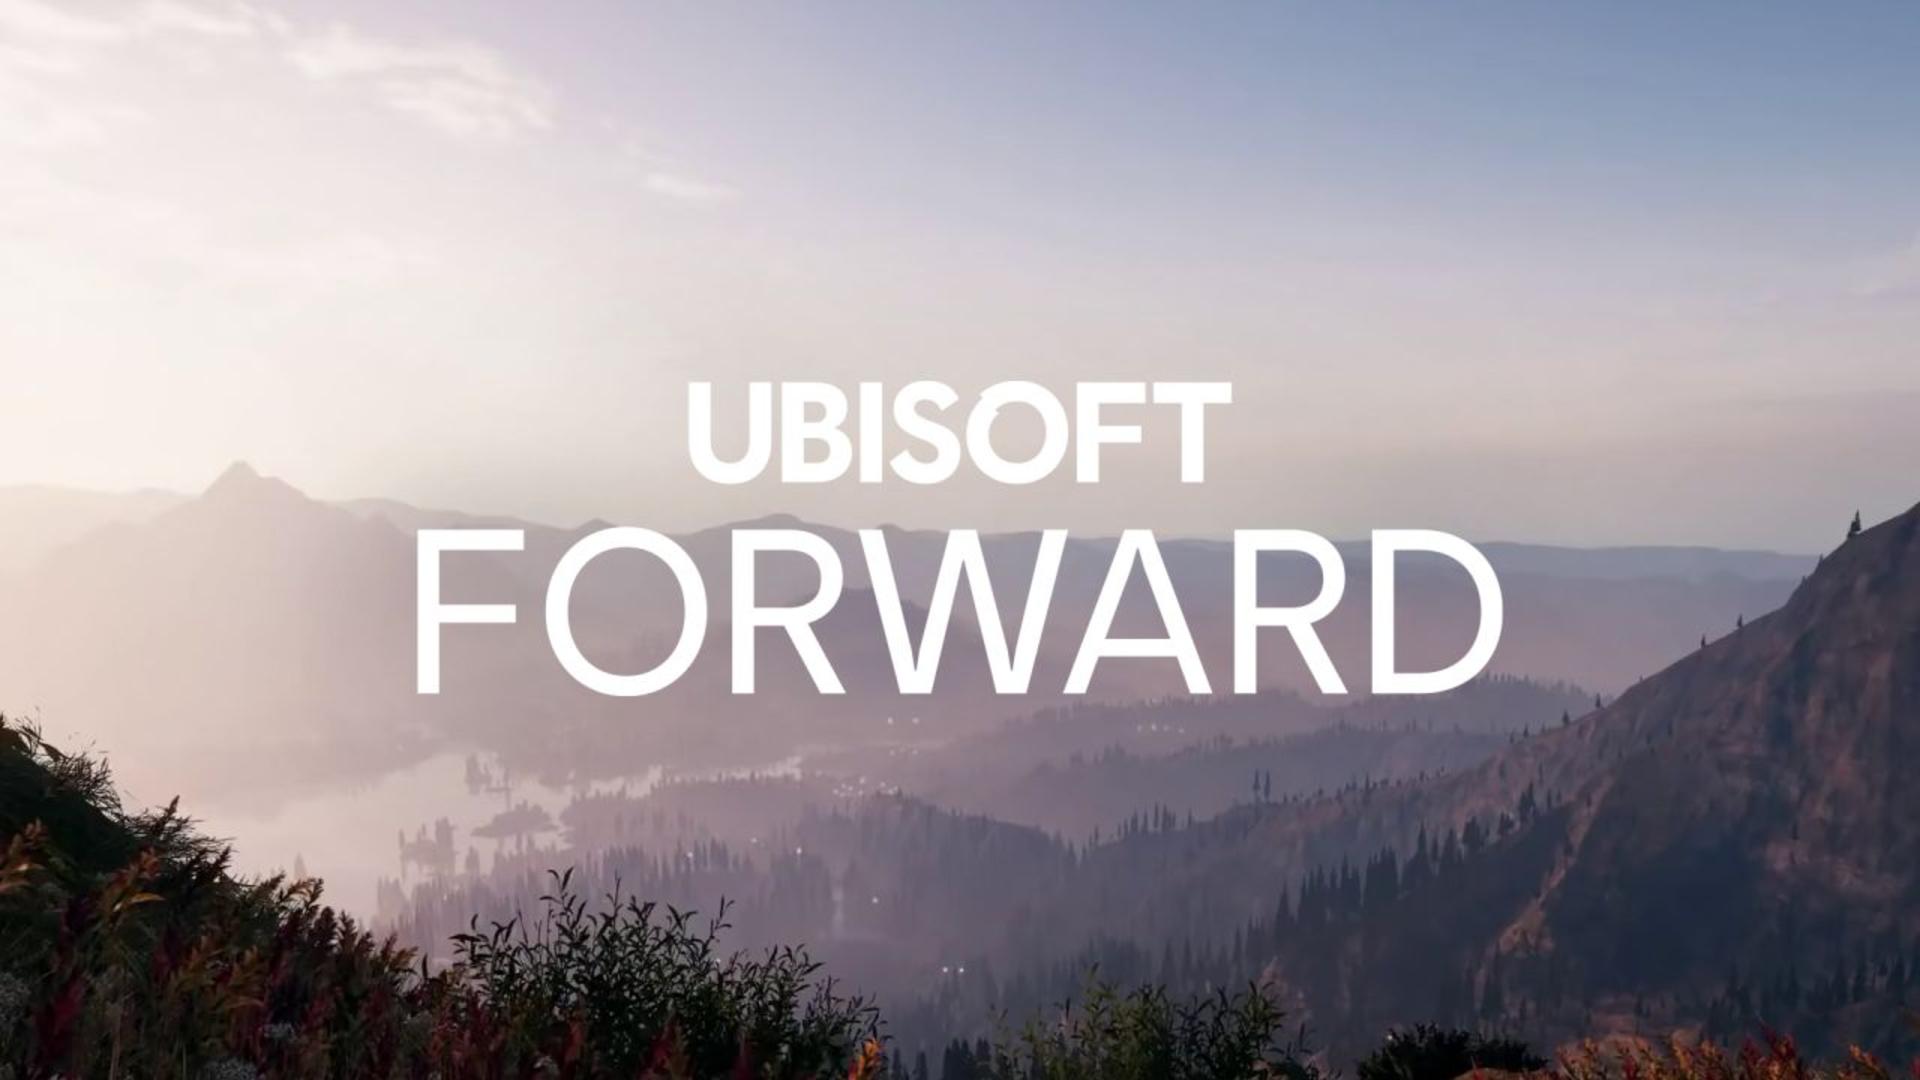 Ubisoft forward será o evento online em julho | f19f21a1 ubisoft forward | roleta | ubisoft forward roleta